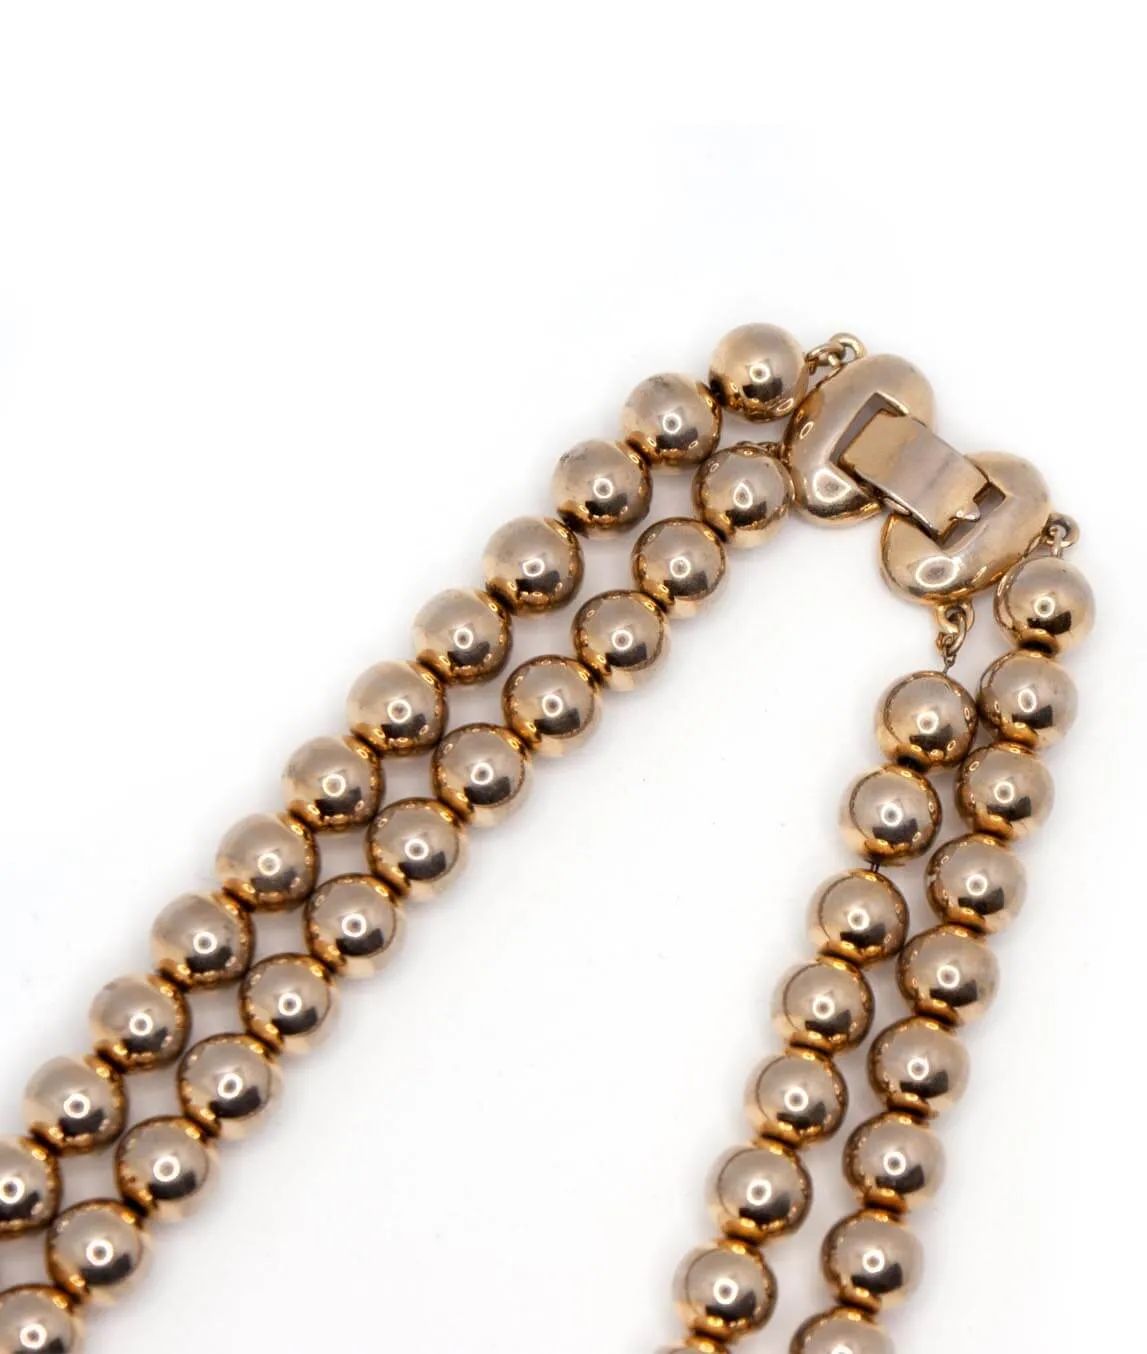 Vintage Kramer necklace clasp